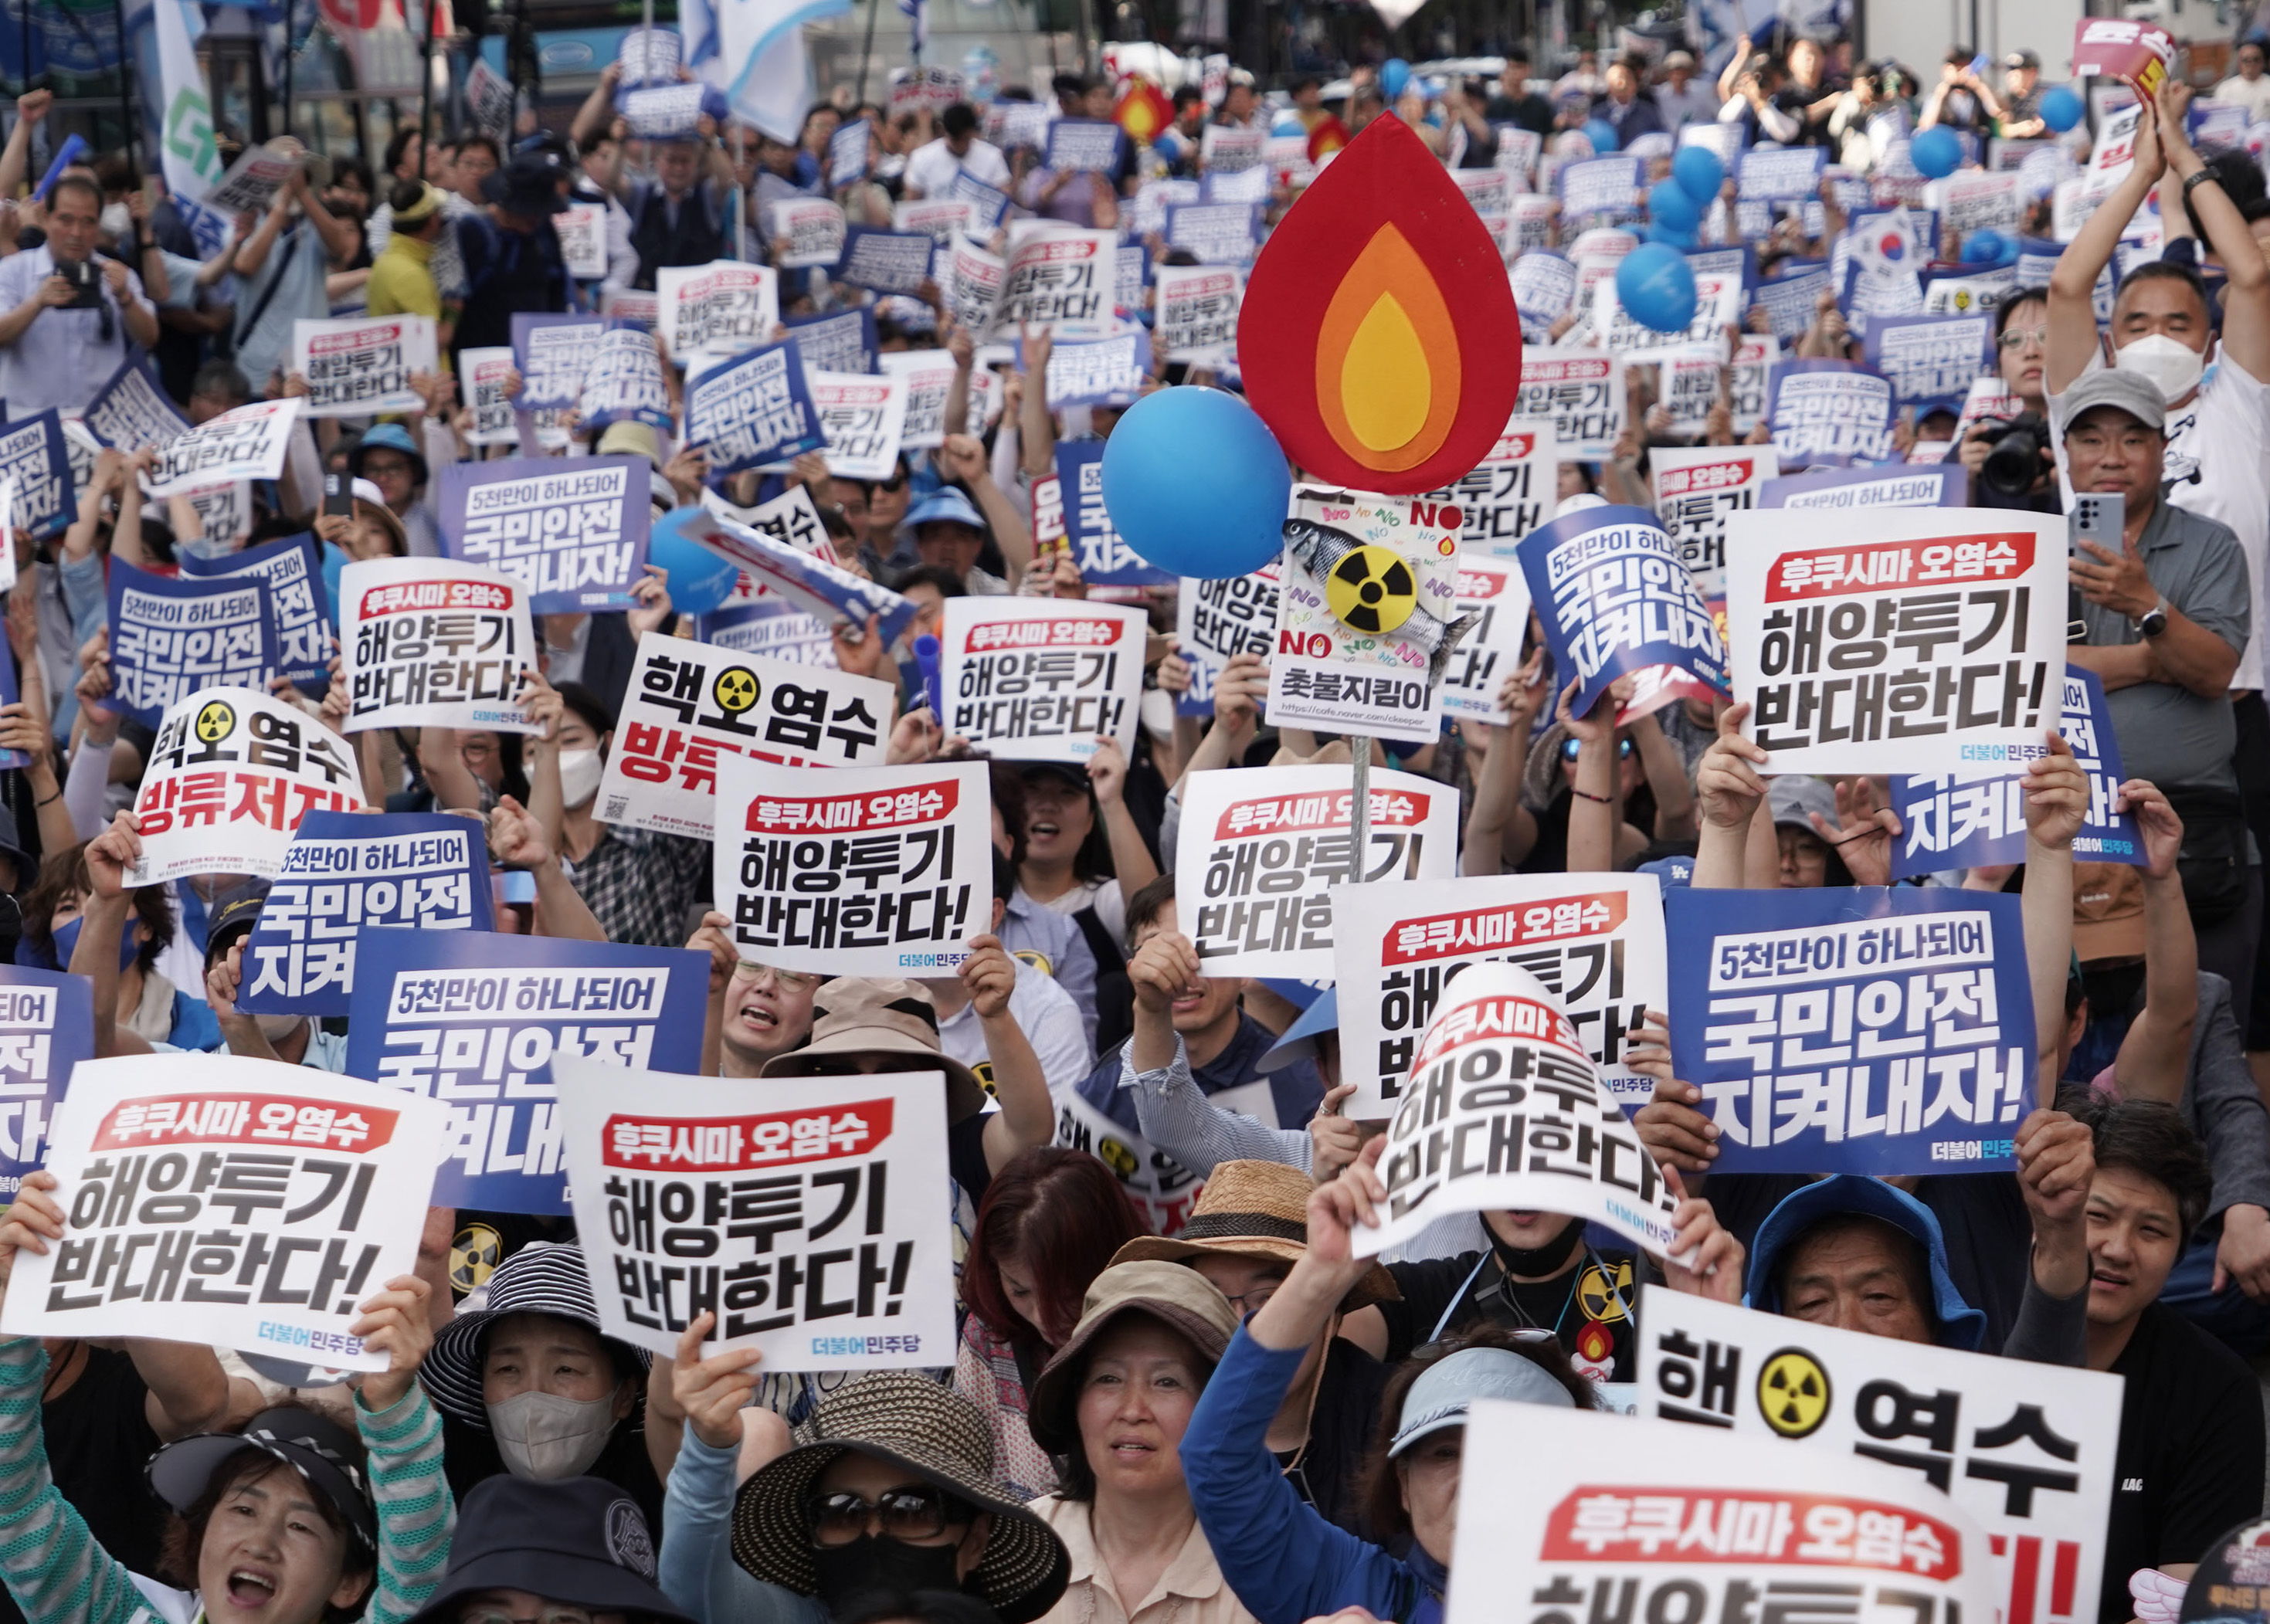 日本政府执意推进排污入海 福岛民众强烈抗议